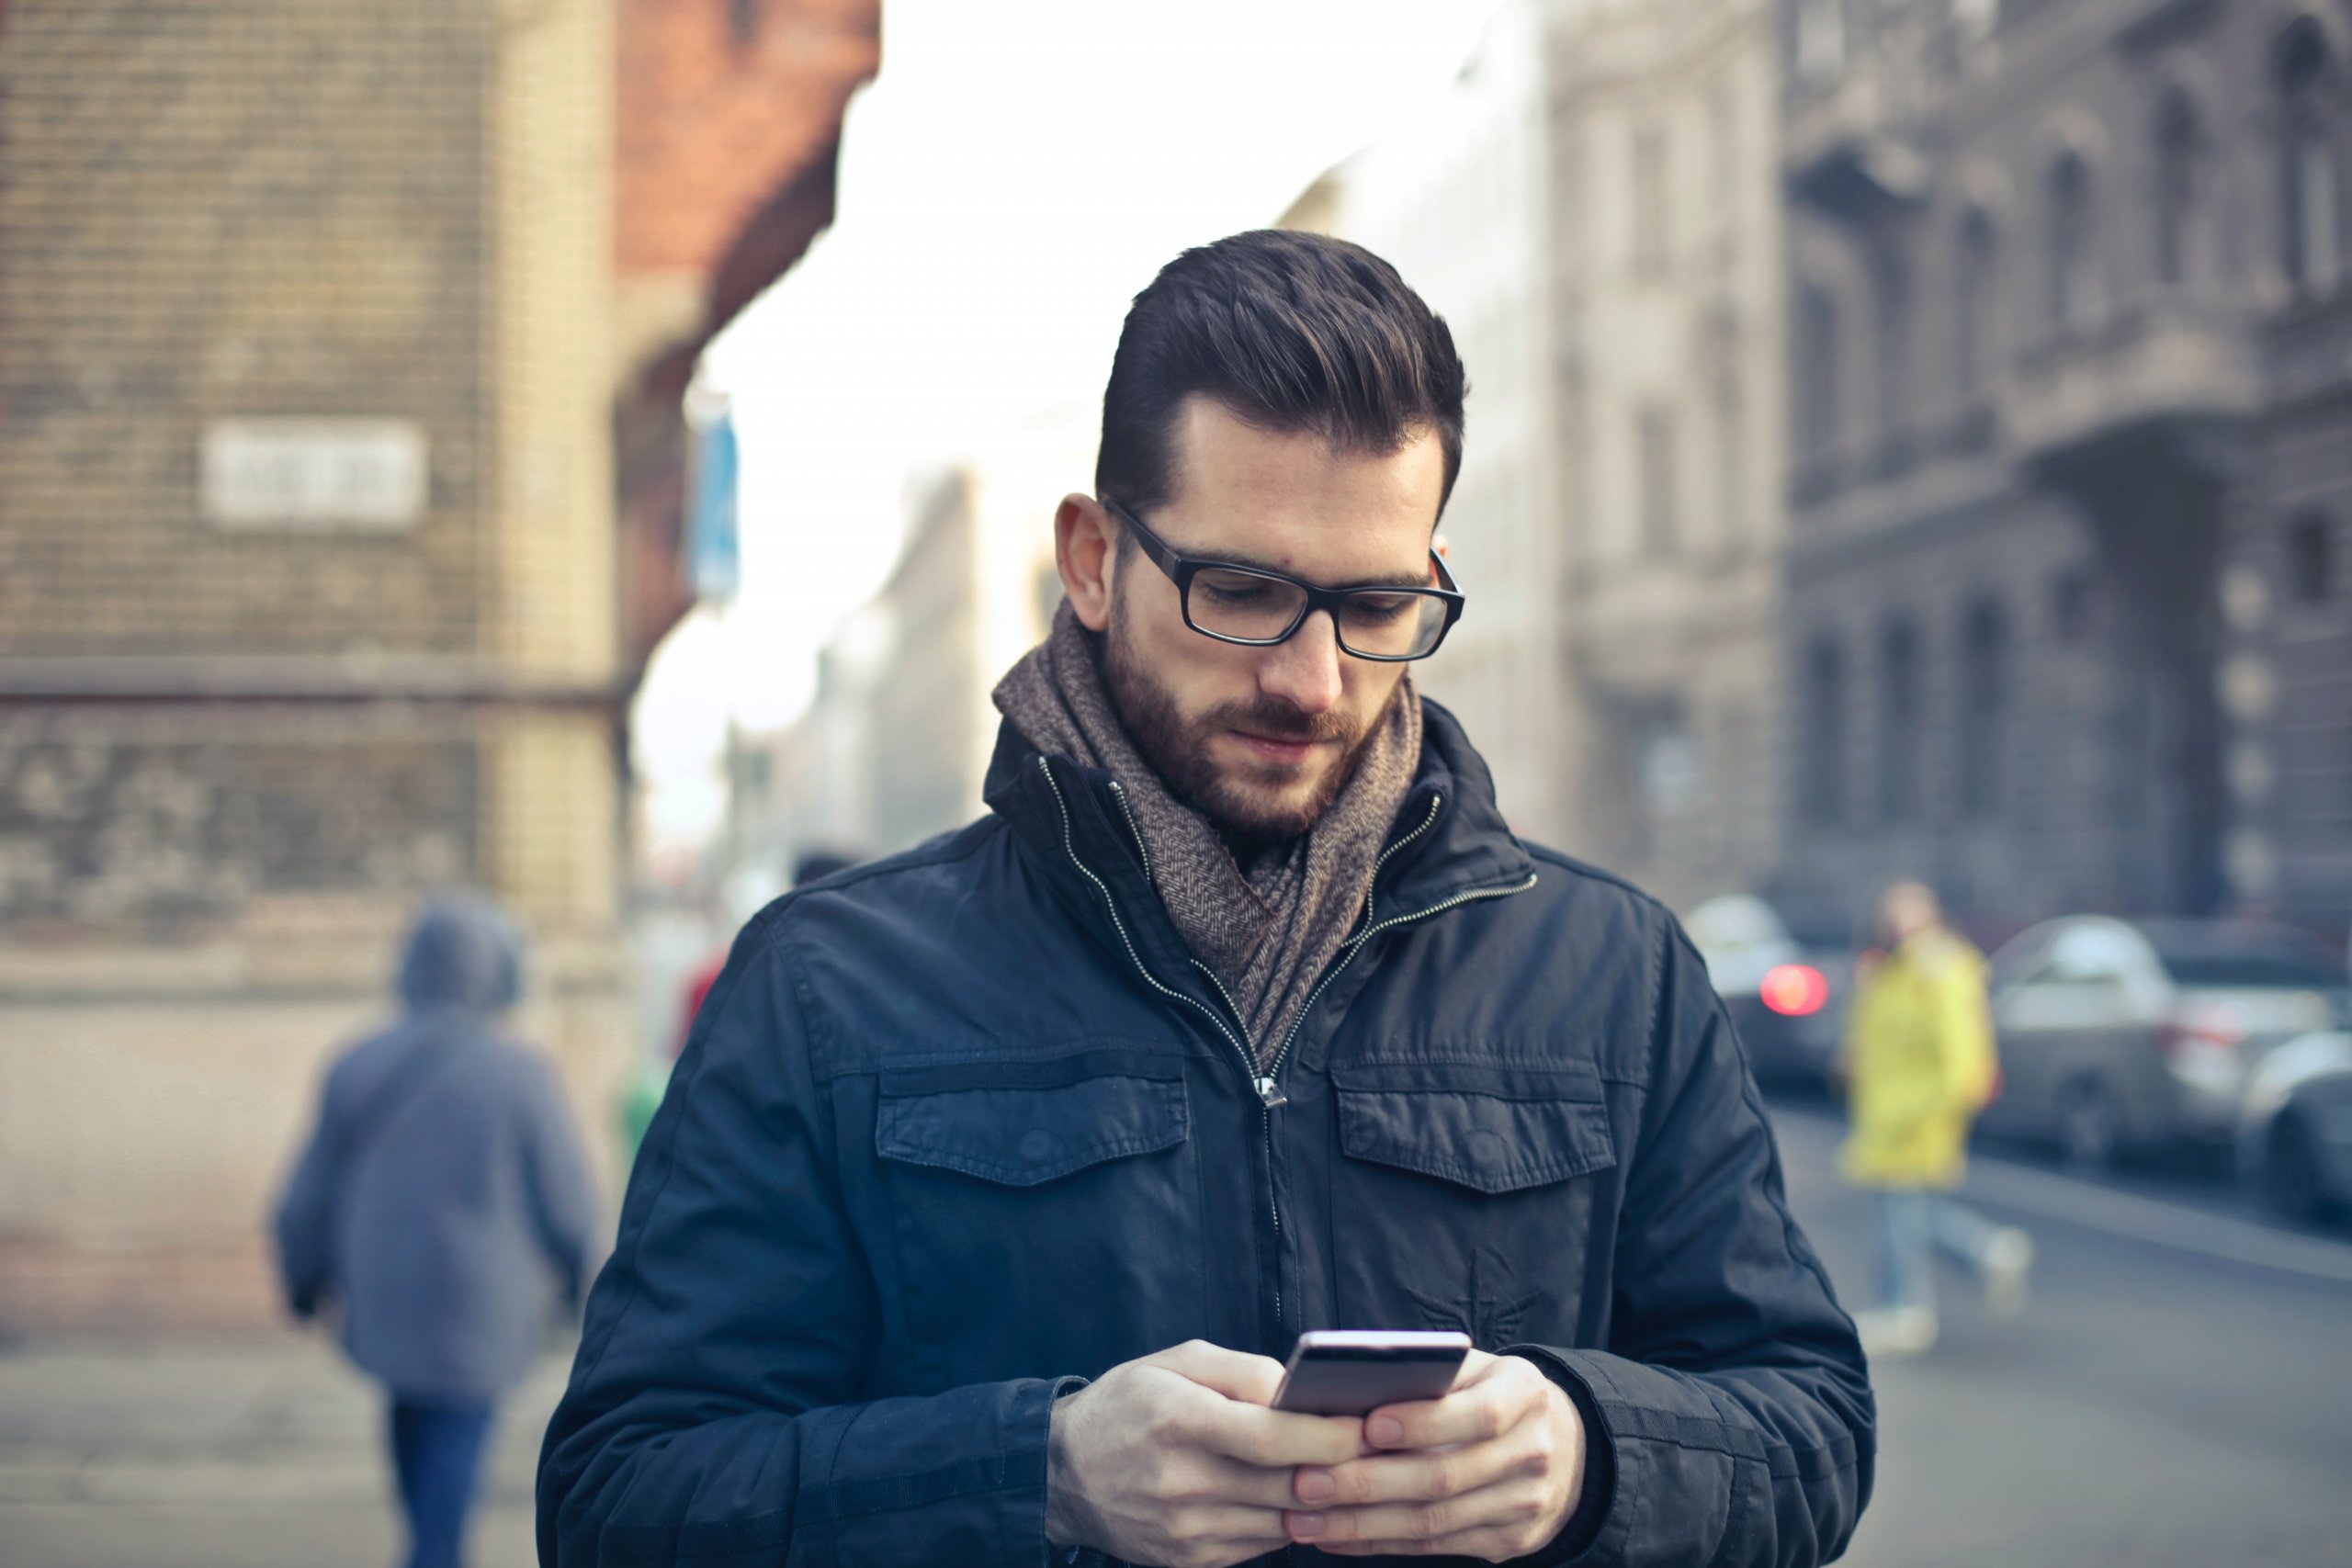 Homem Vestindo Uma Jaqueta Preta Com Zíper Segurando Um Smartphone Cercado Por Prédios De Concreto Cinza. Disponível em Pexels